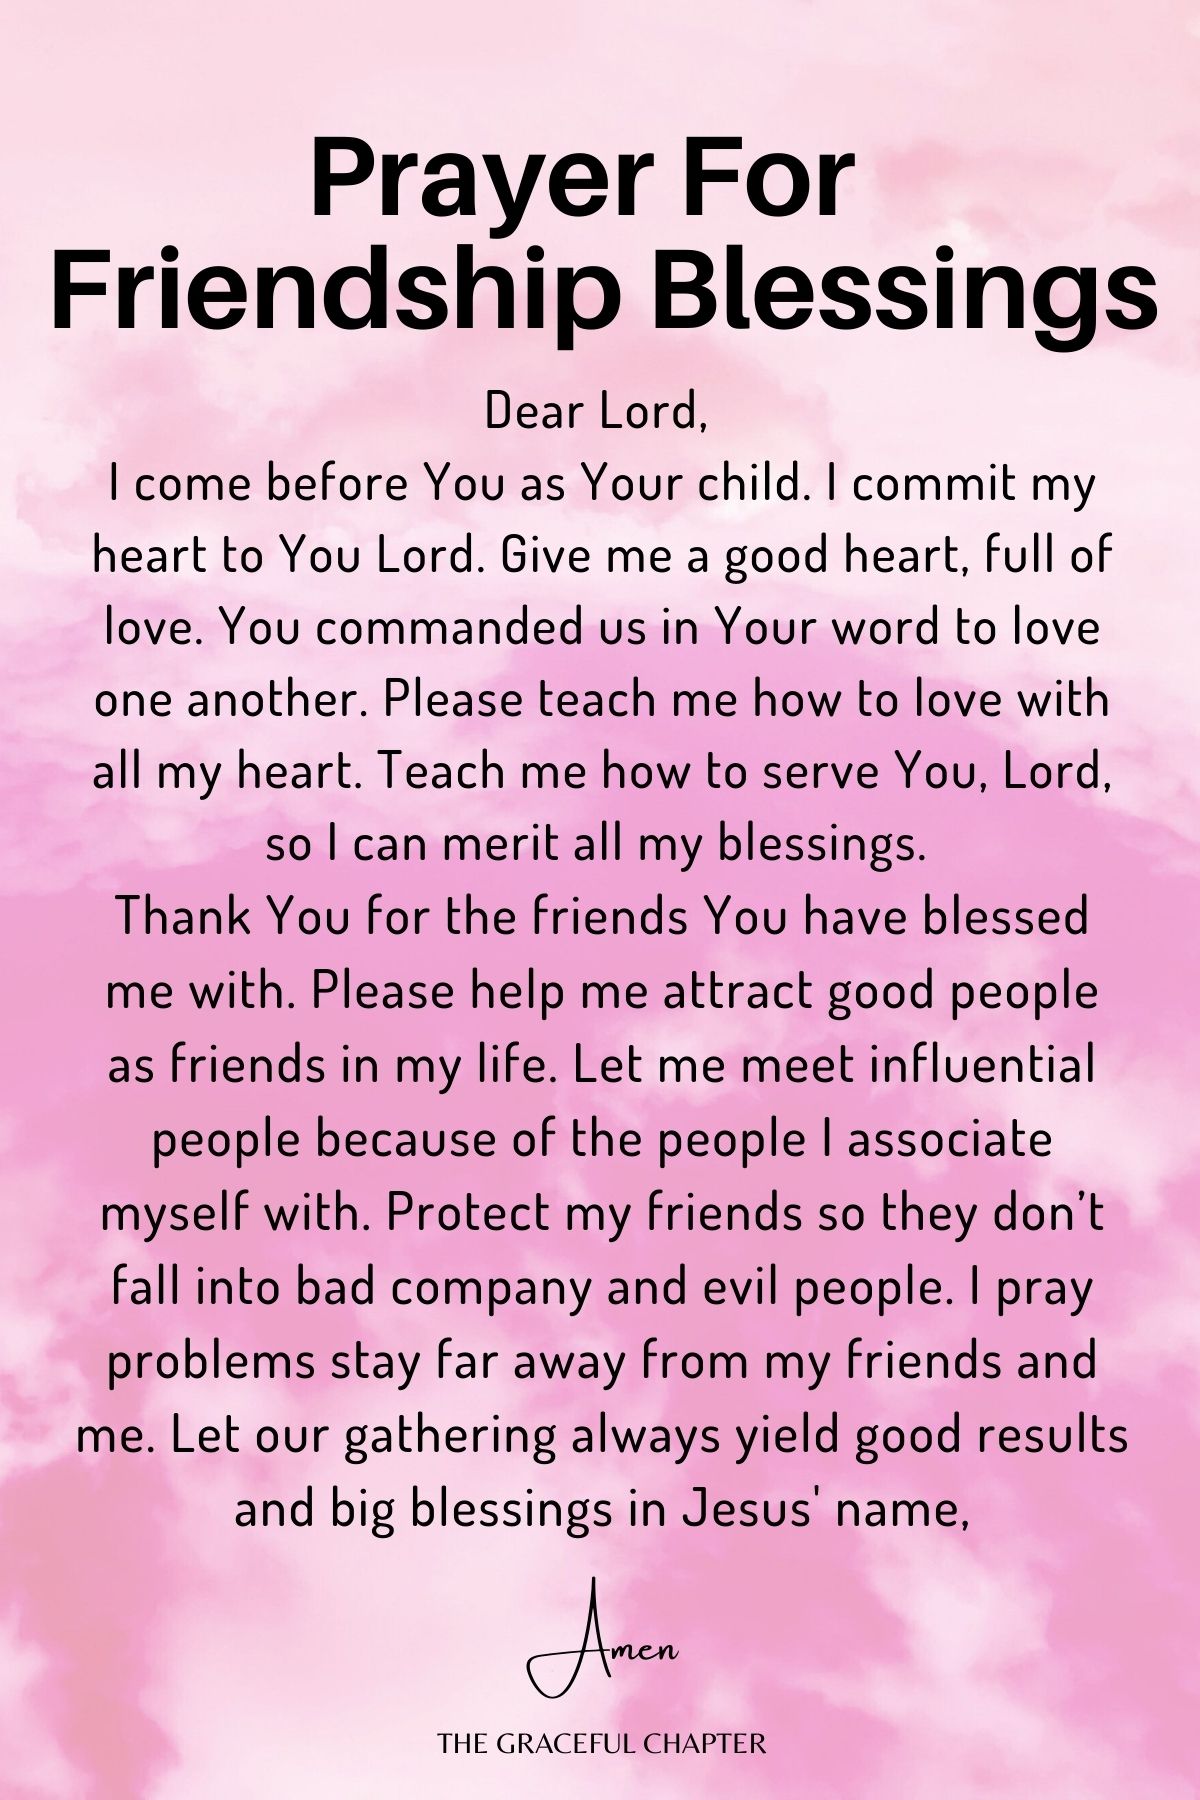 For friendship blessings